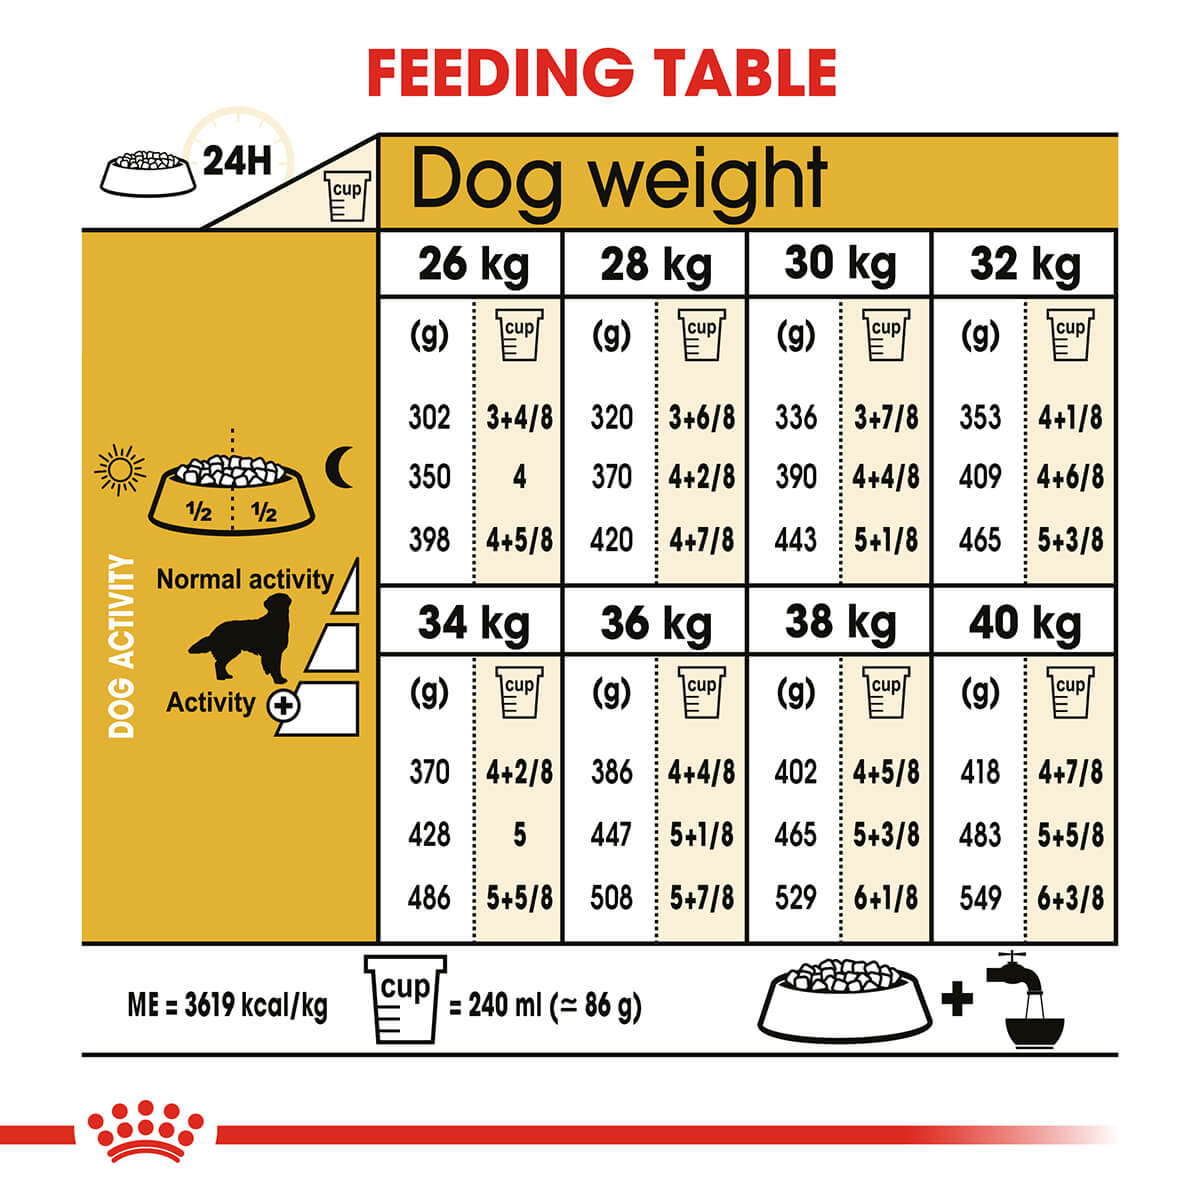 Royal Canin Golden Retriever Adult Dry Dog Food 12kg (122725000045) [default_color]